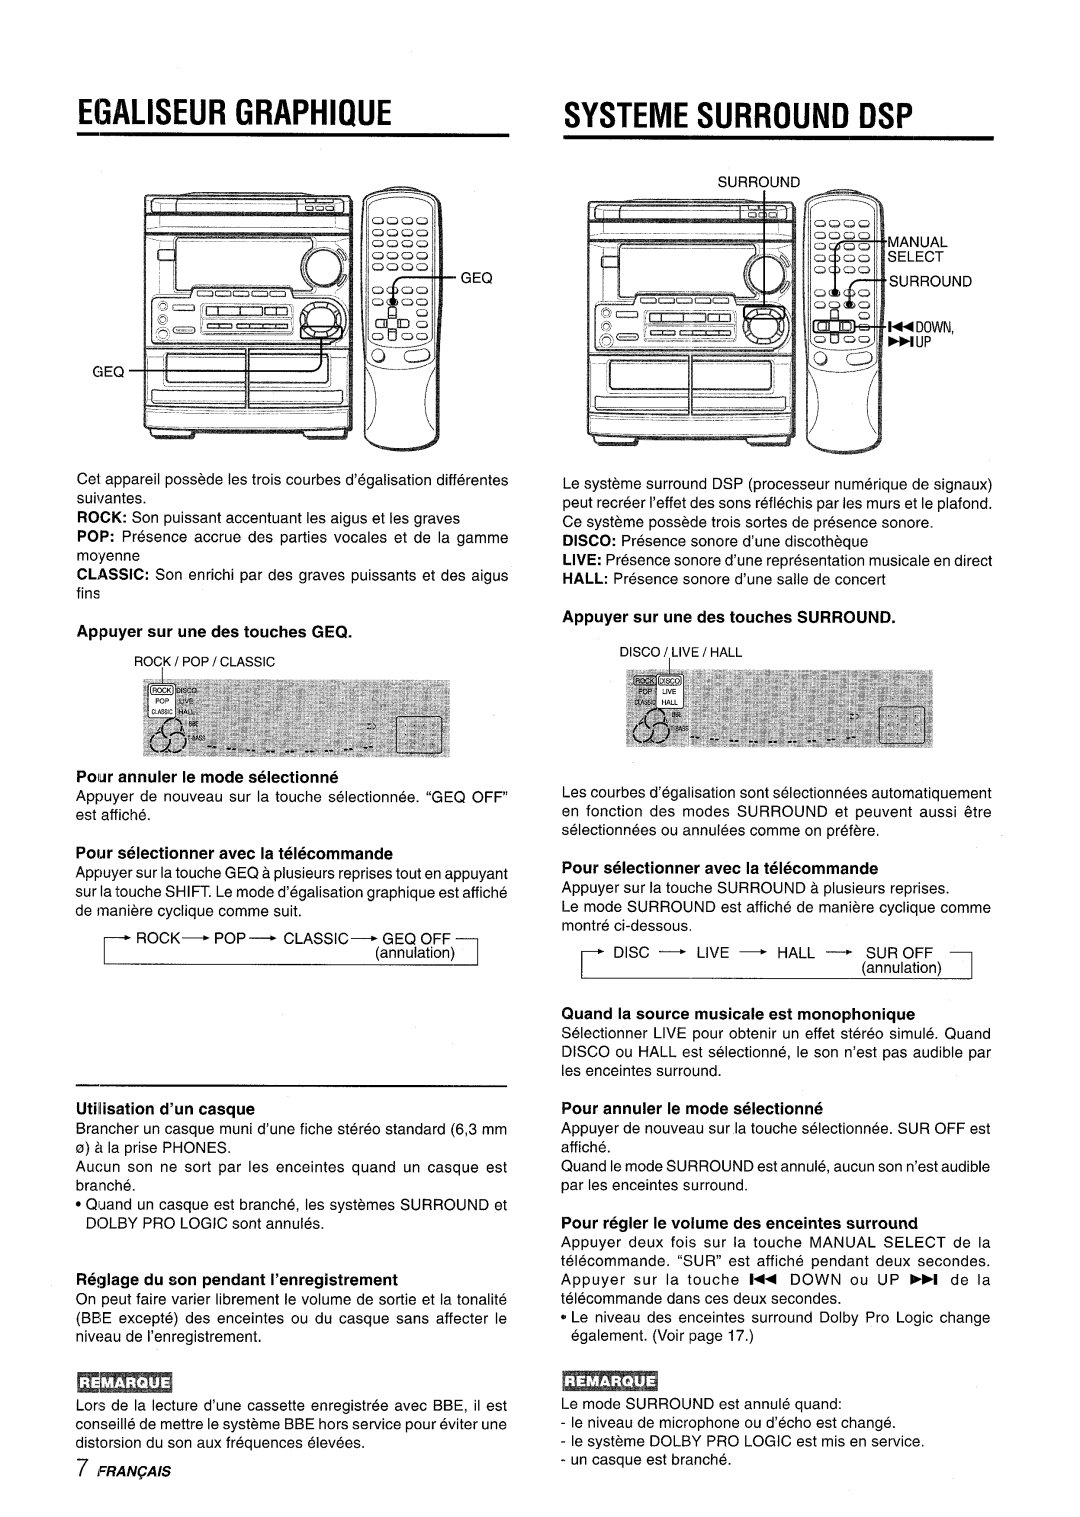 Aiwa CX-NMT50 manual Egaliseur Graphiiue, Systeme Surround Dsp, l“#.- ,,I, 7 ,LRA~@/s, Appuyer sur une des touches GEQ 